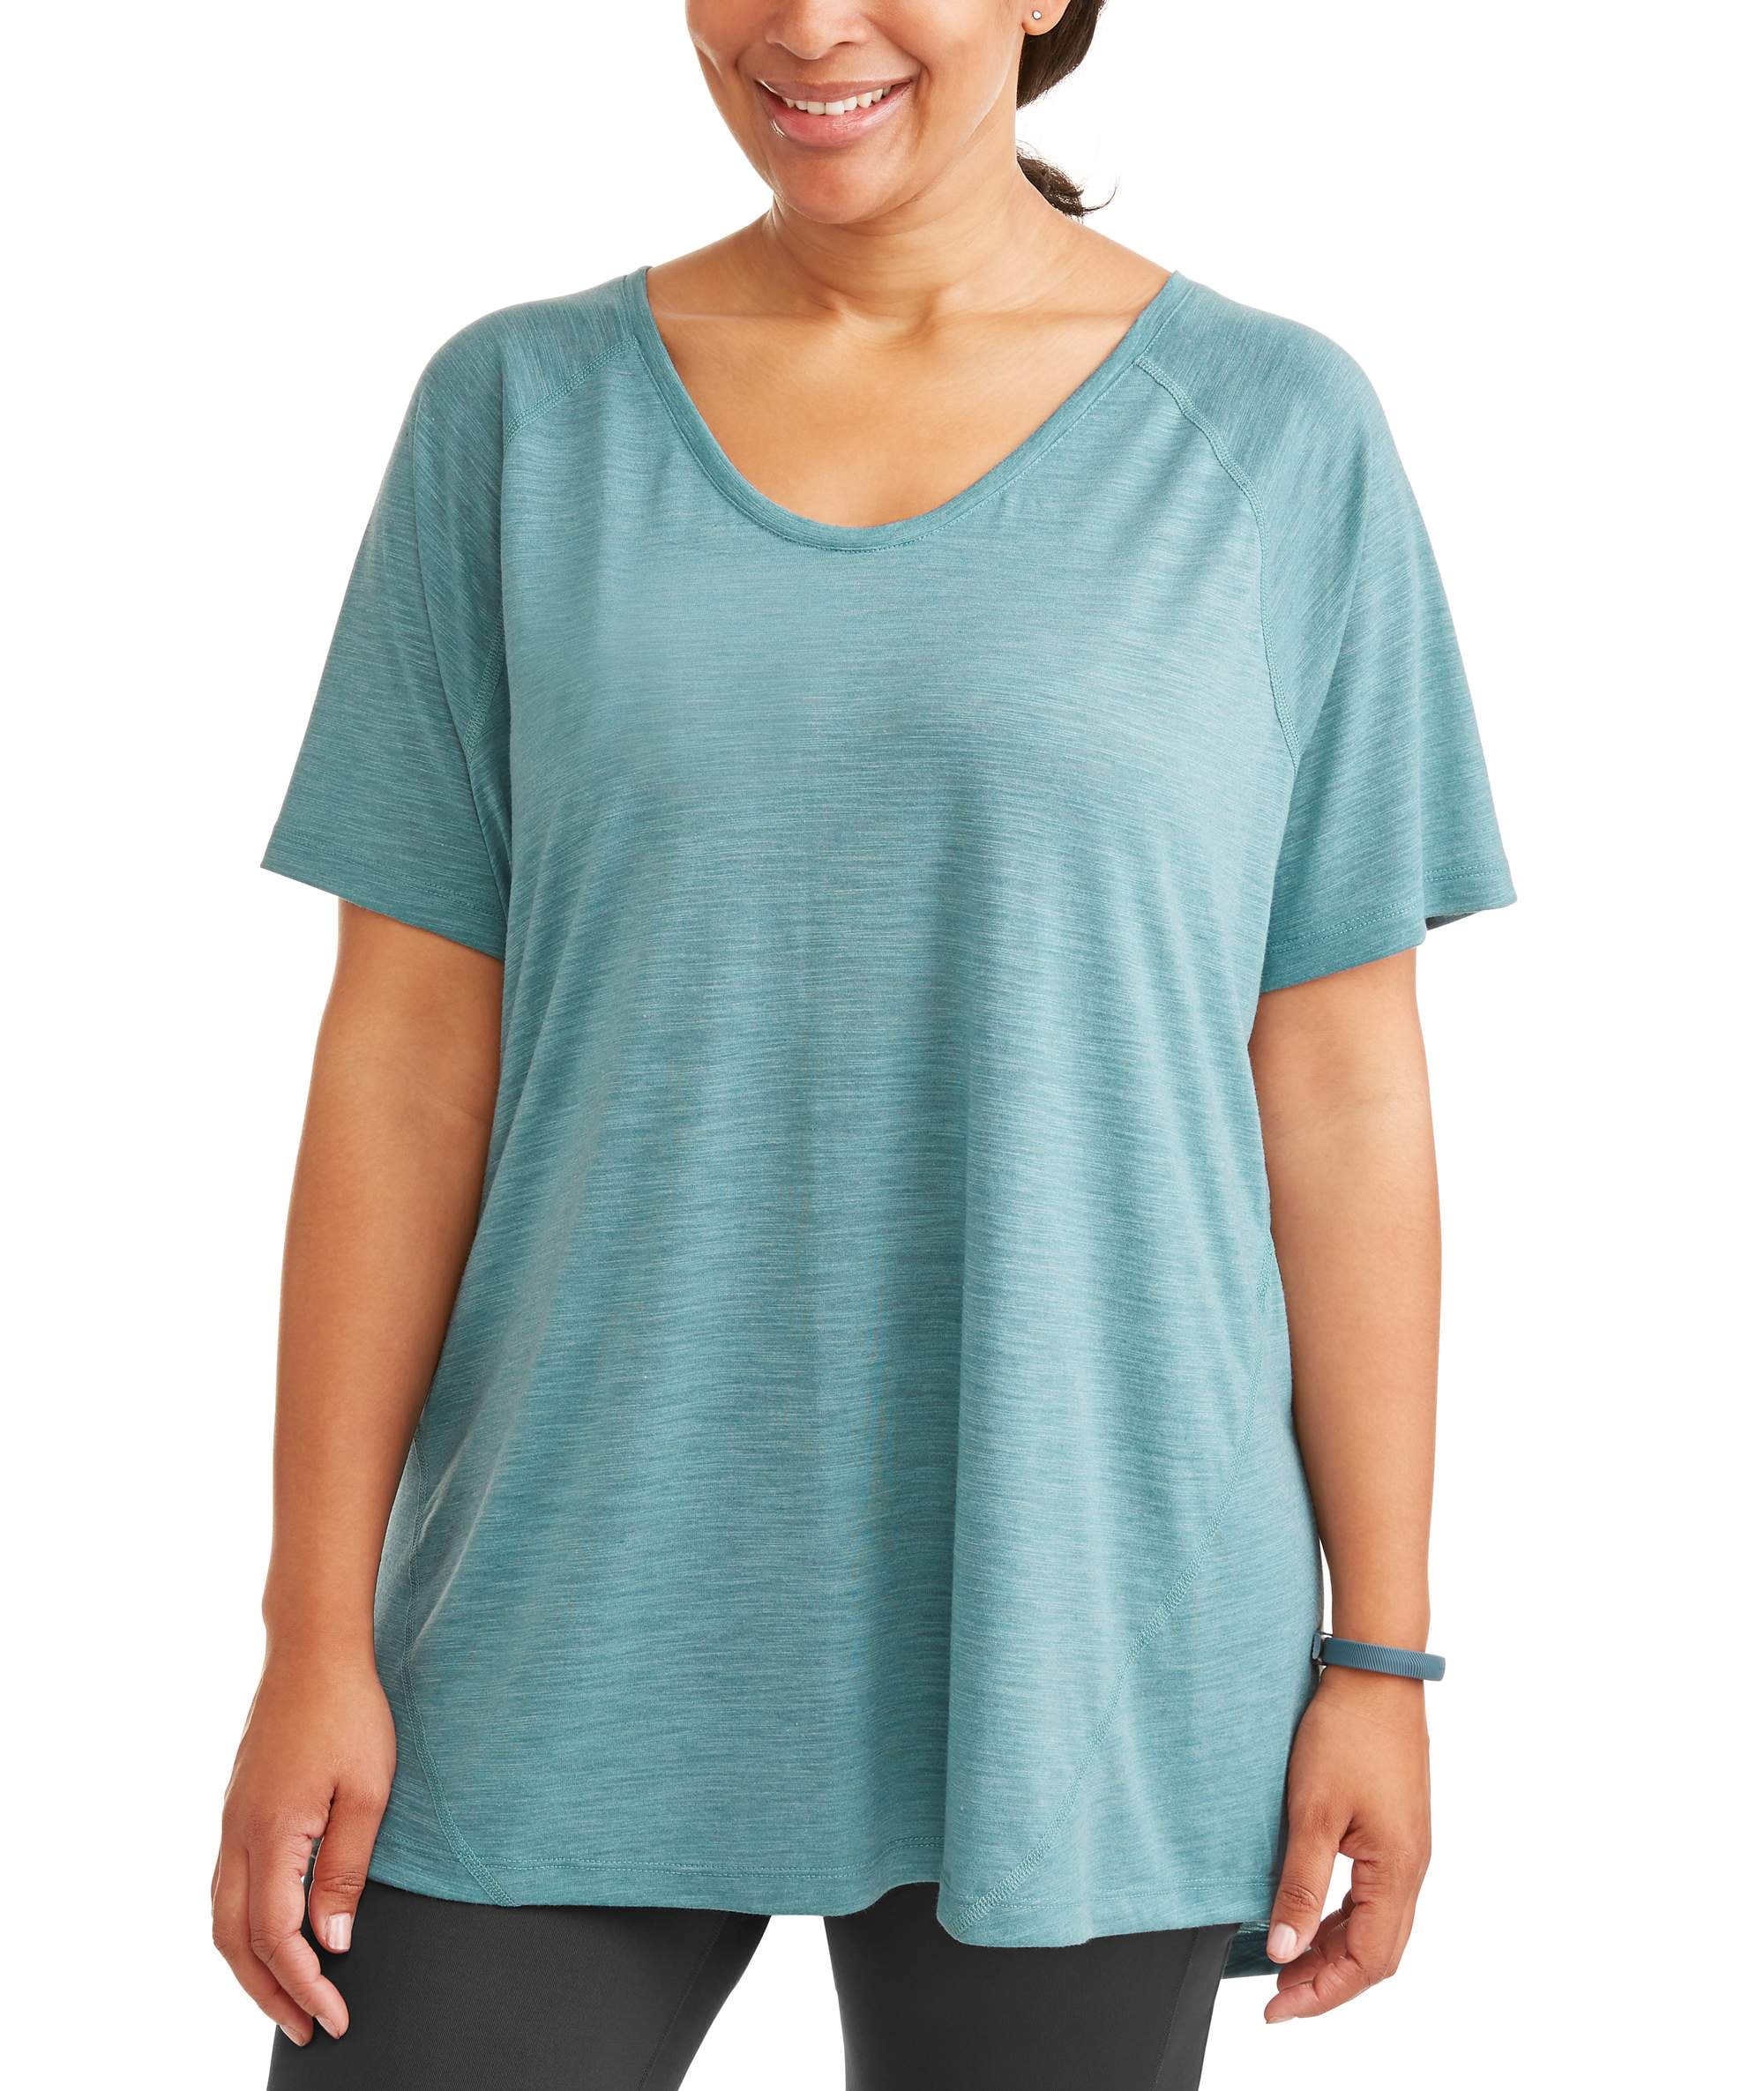 Terra & Sky Women's Plus Size Scoop Neck T-Shirt 